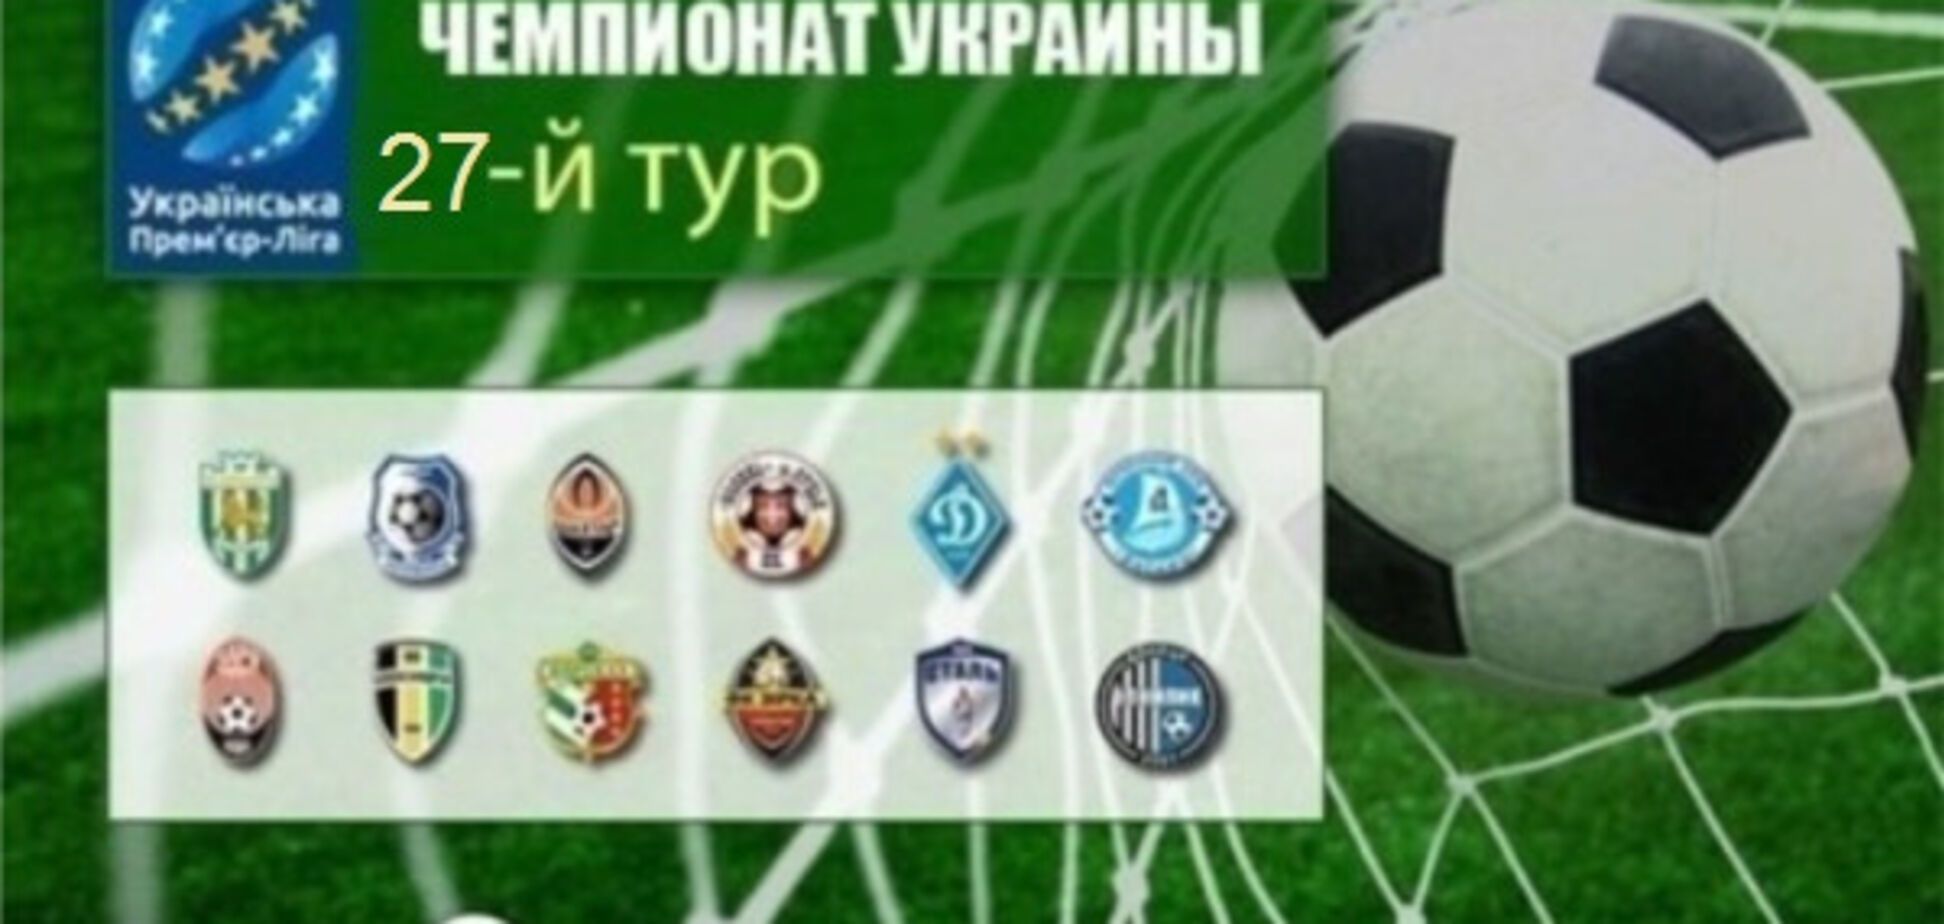 27-й тур чемпионата Украины по футболу: расписание трансляций, результаты и обзоры